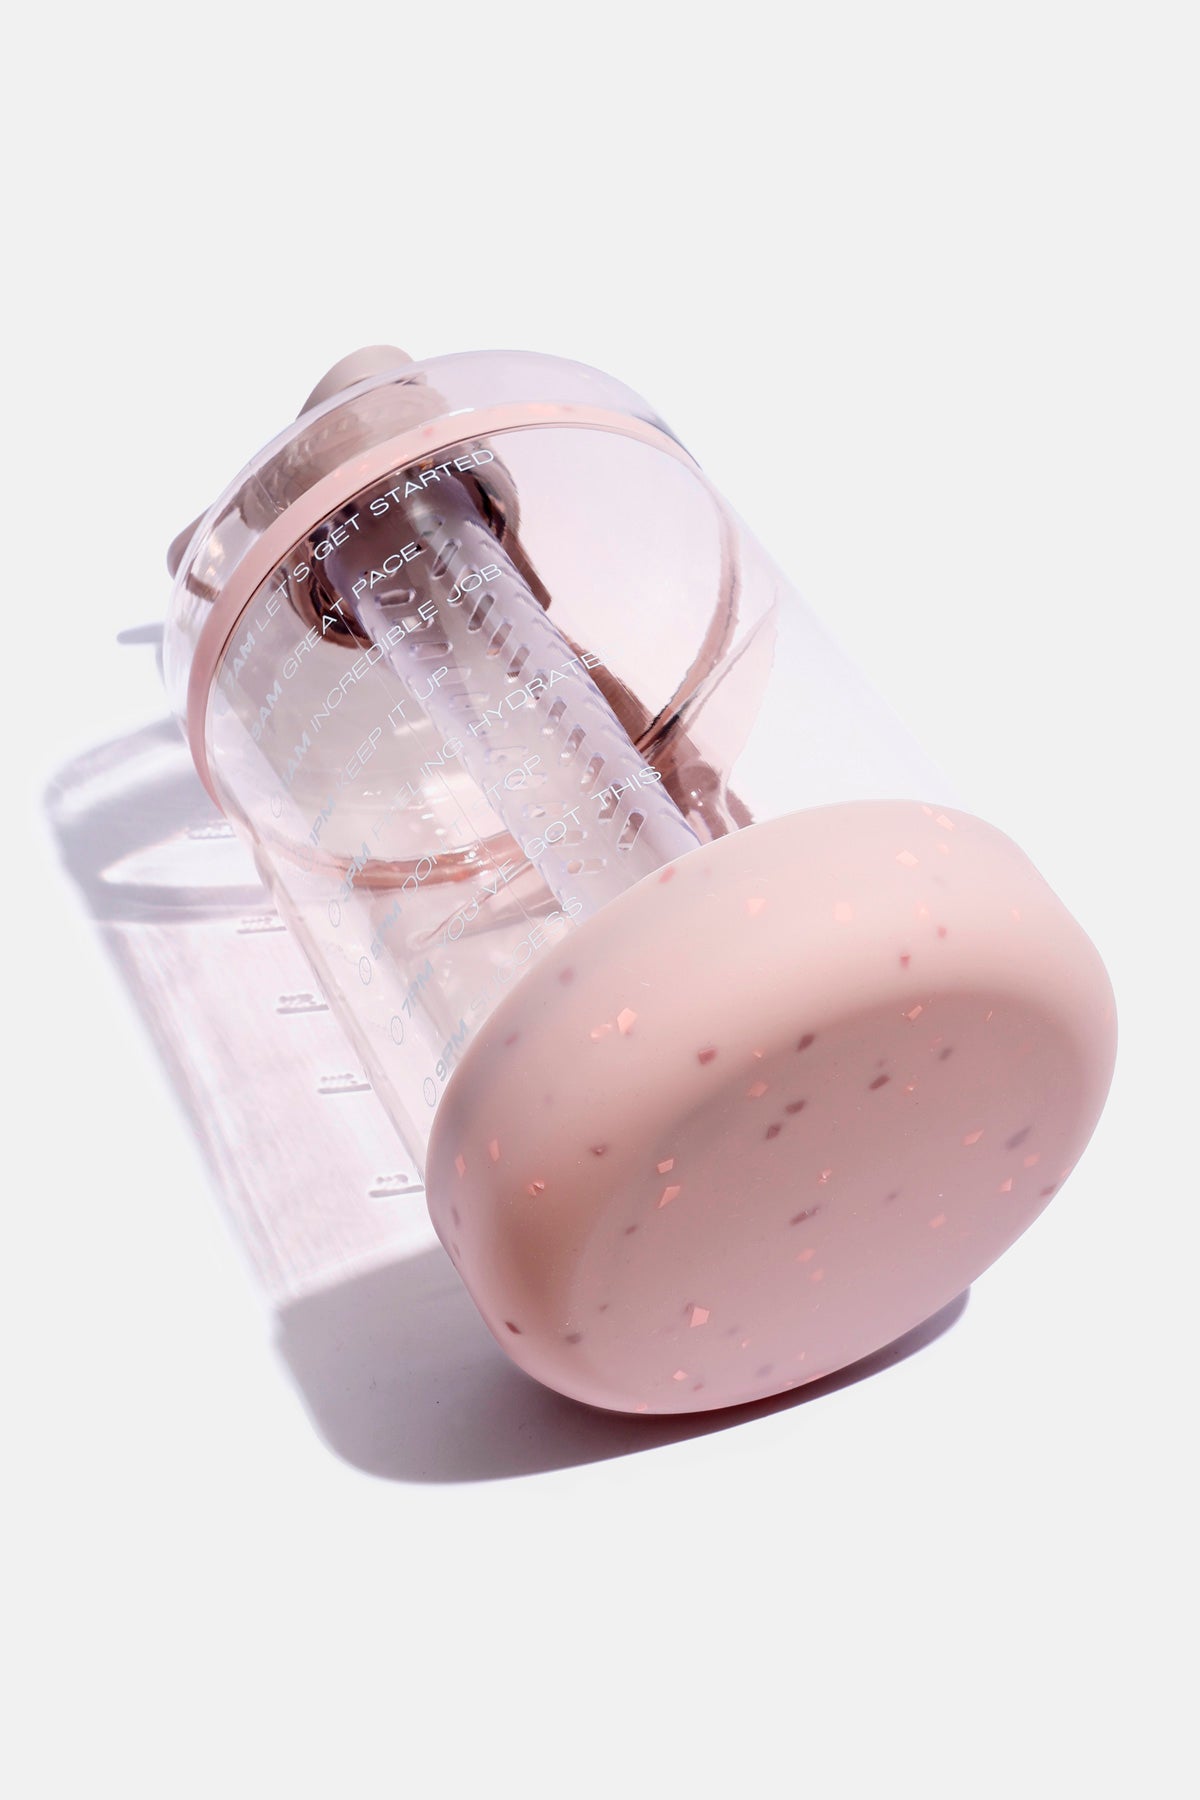 Ready Set Glow Gallon Bottle Bag - Pink by POPFLEX® - Pink - 6